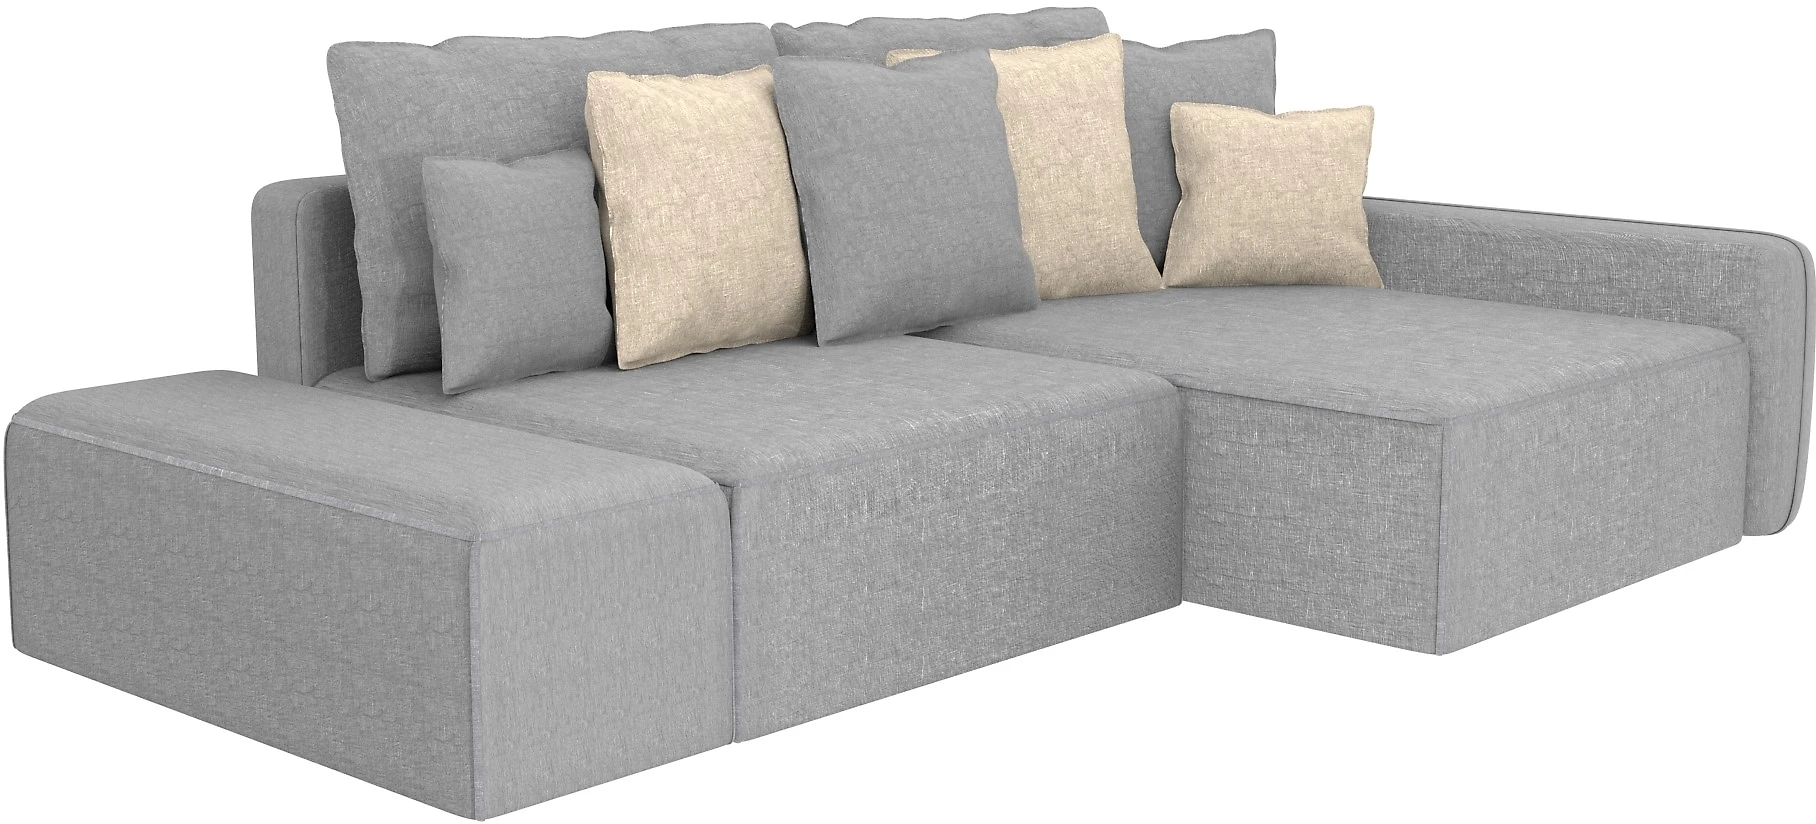  угловой диван из рогожки Портленд Дизайн 2